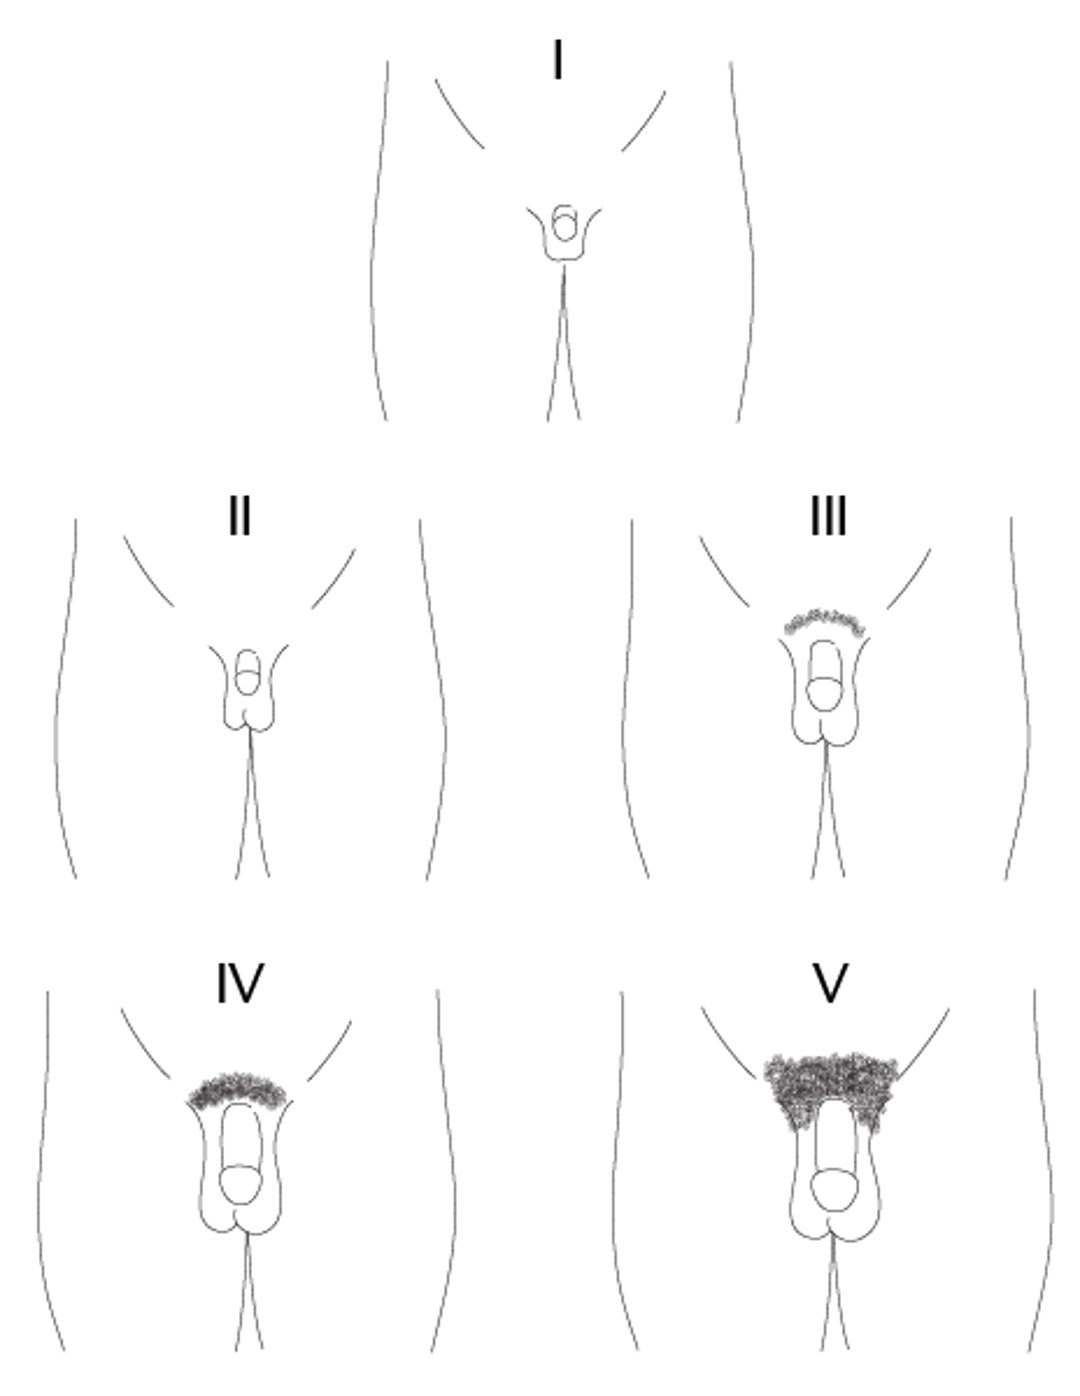 Схематическое изображение стадий I-V созревания полового члена у мальчиков по Таннеру